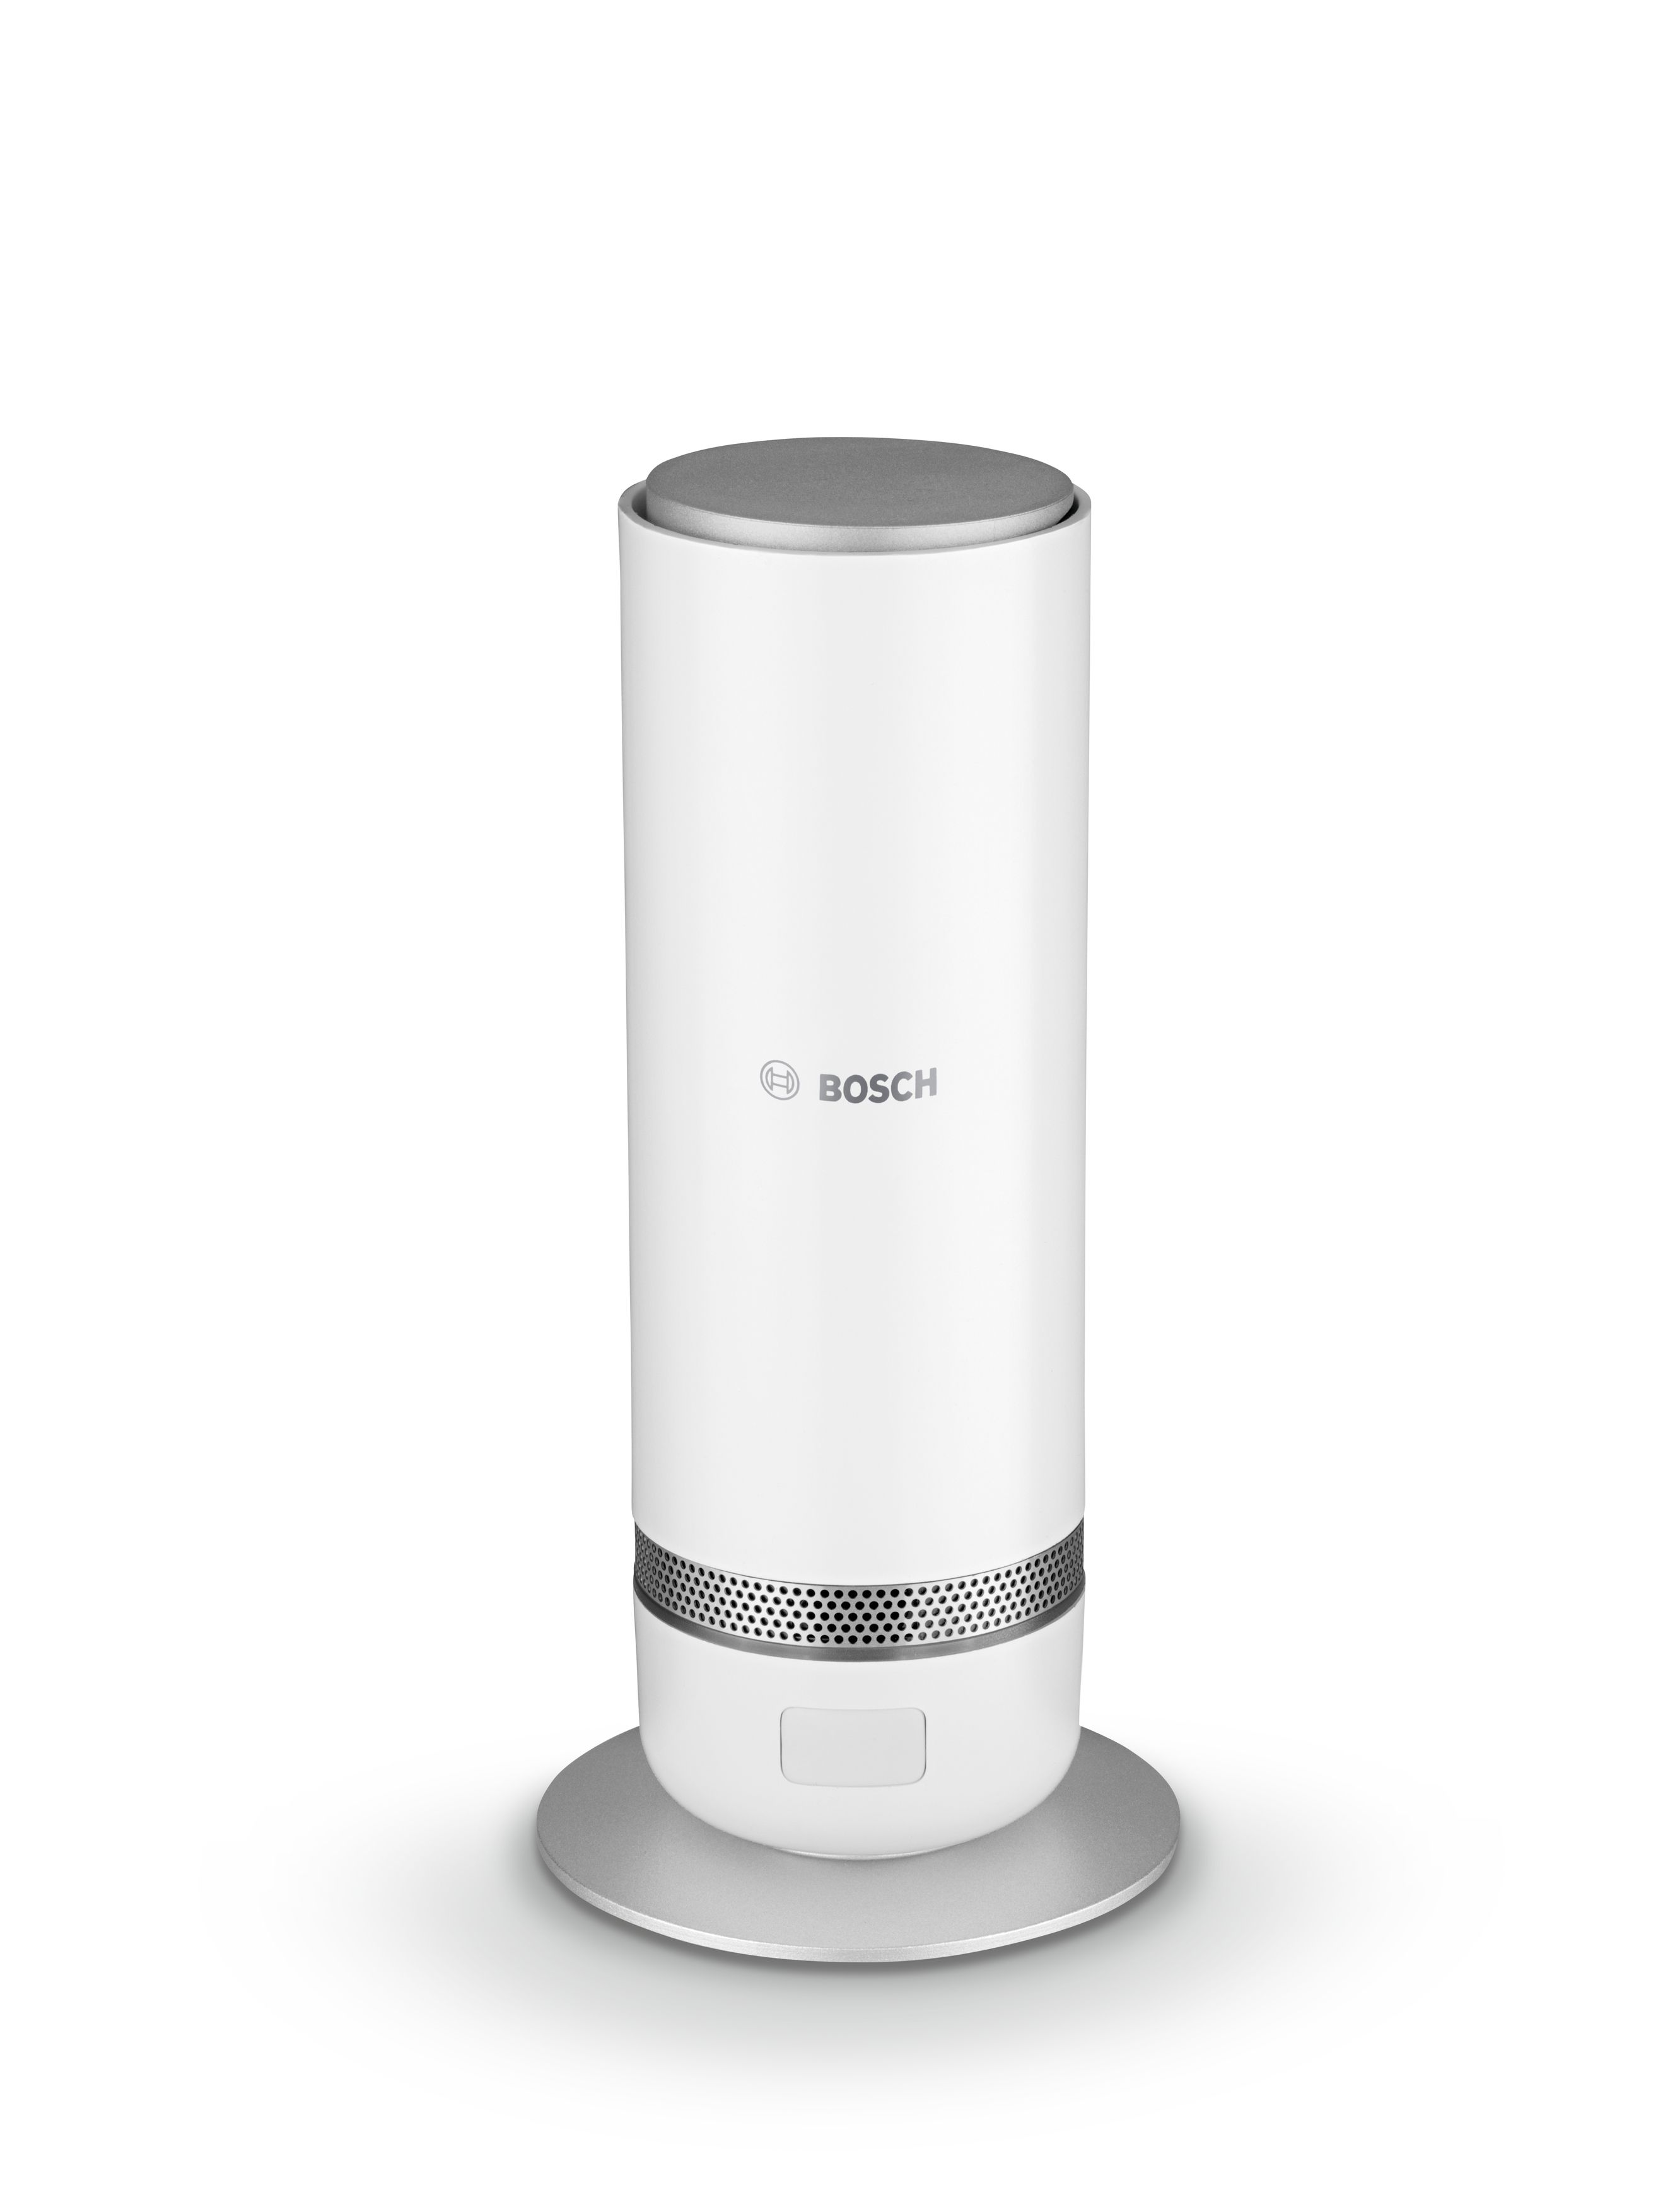 Bosch Smart Home Wireless Indoor camera - White